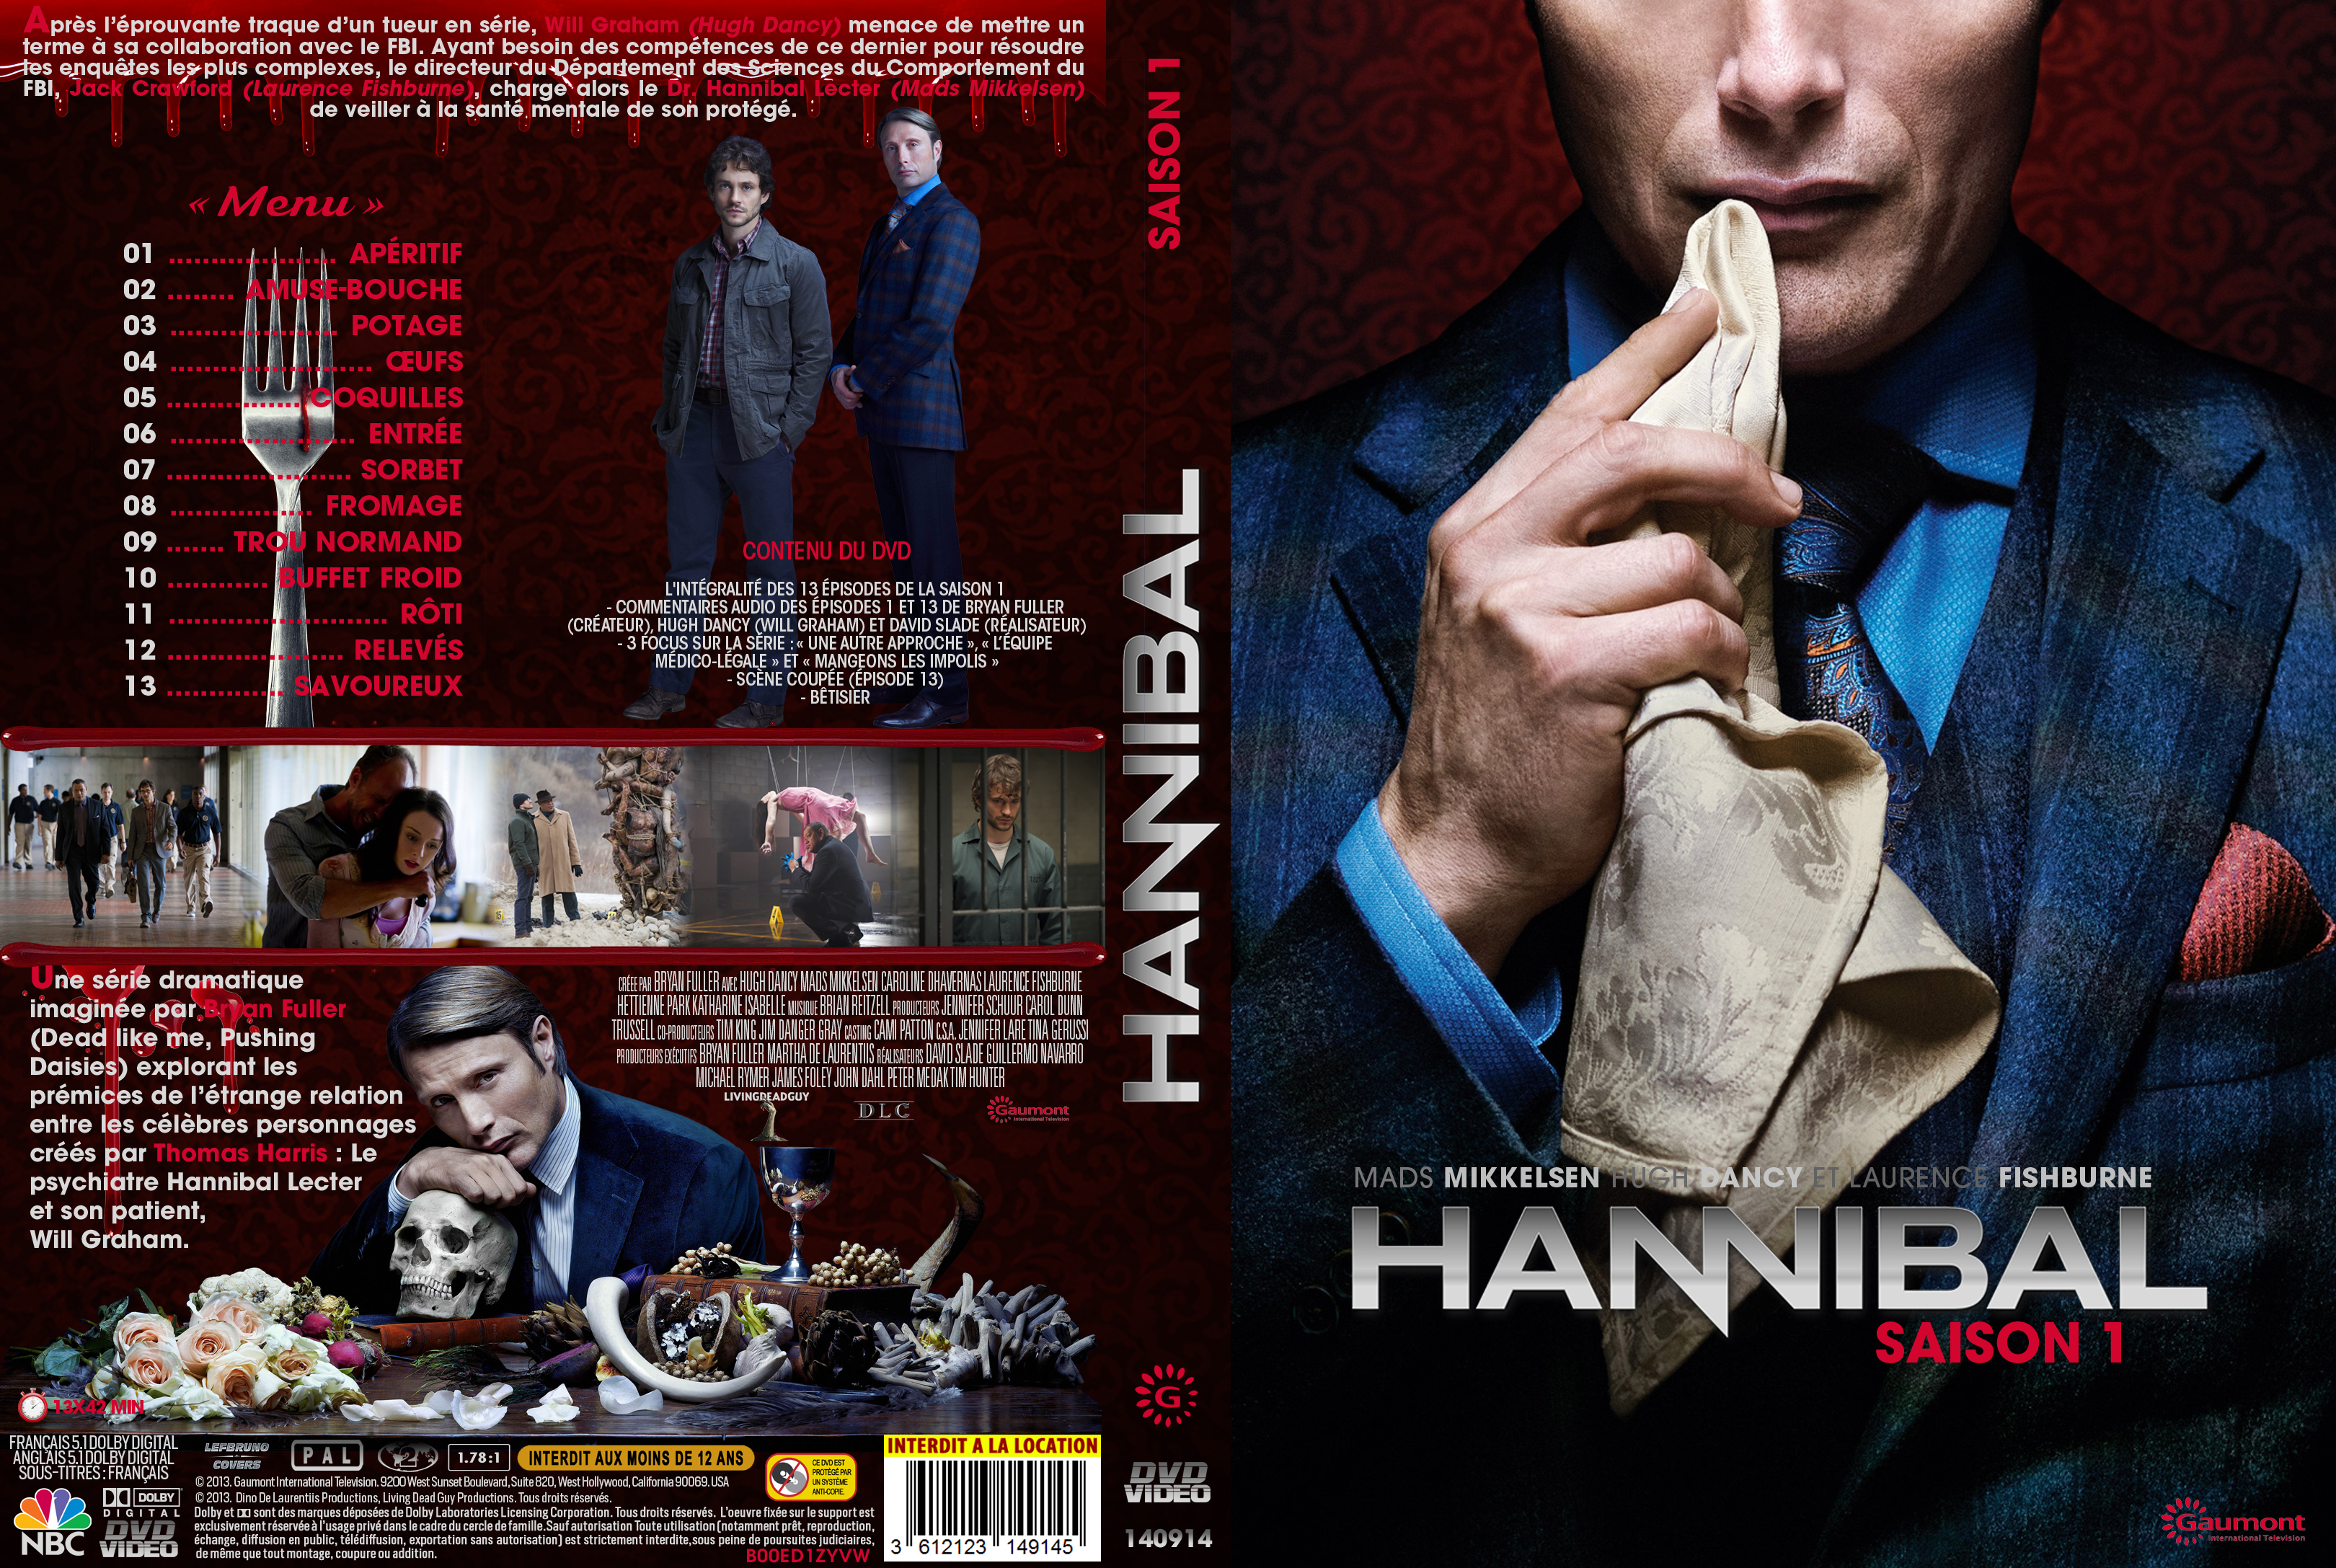 Jaquette DVD Hannibal Saison 1 custom v2